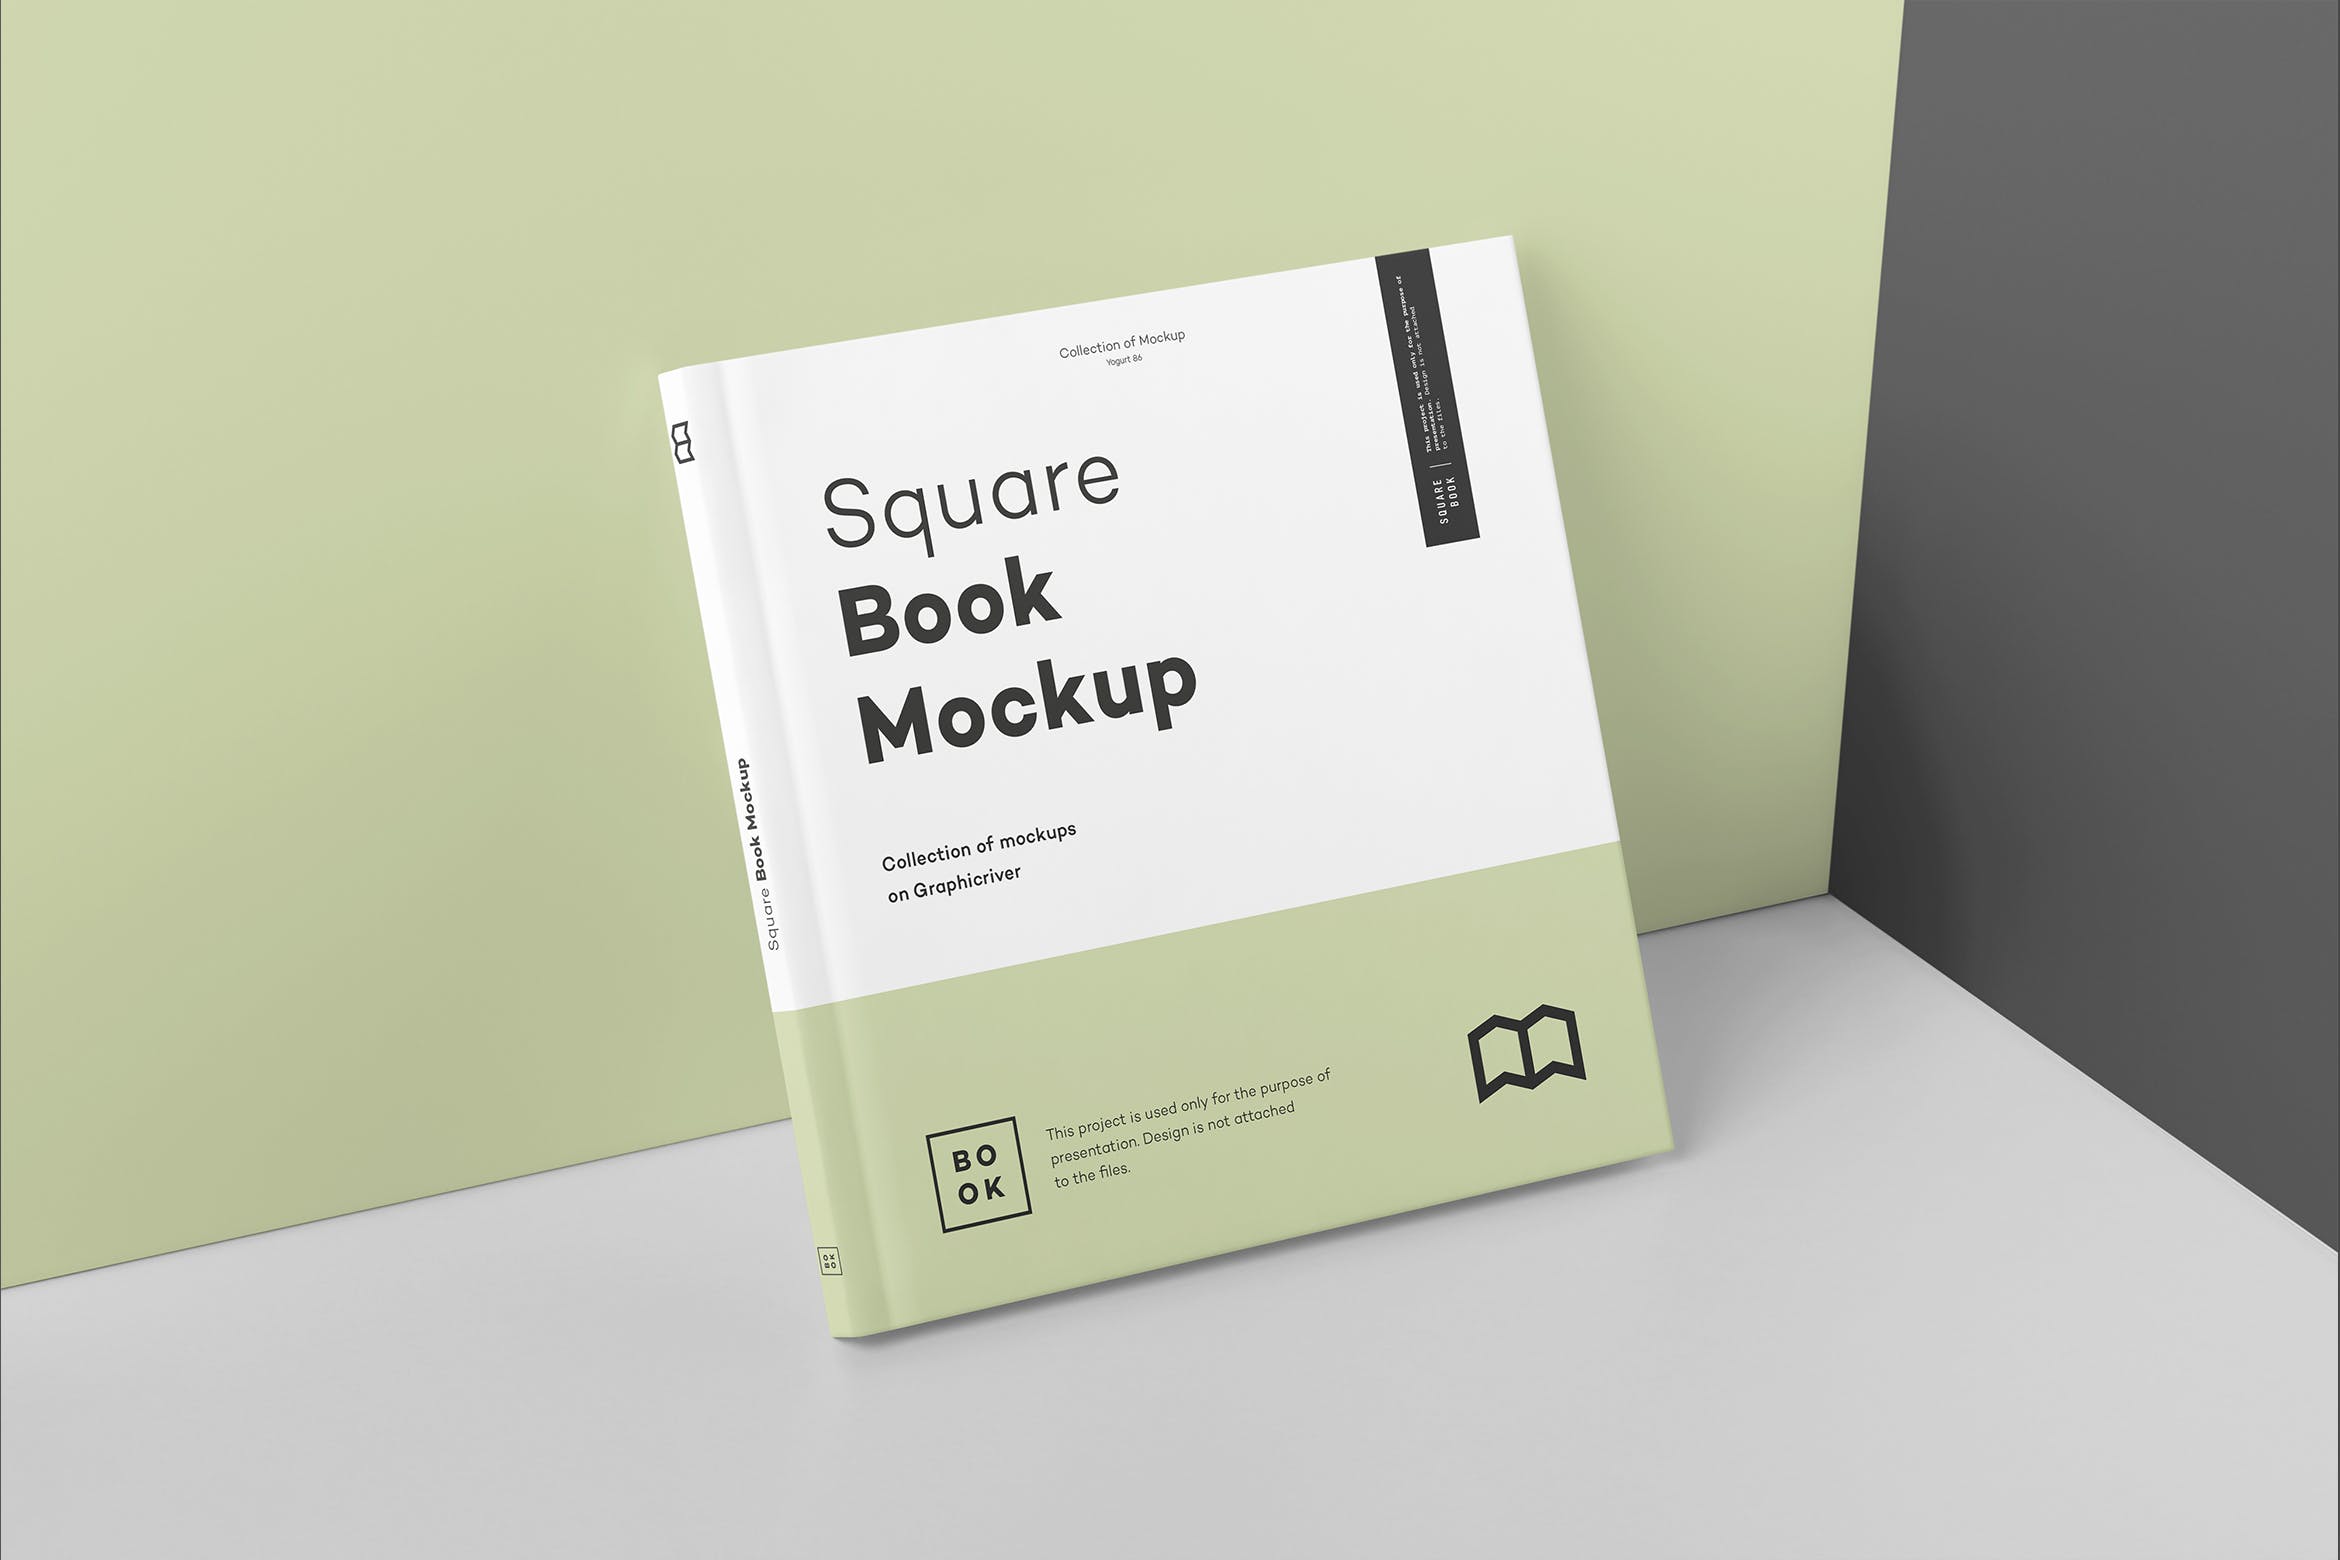 方形精装图书封面&内页版式设计预览样机 Square Book Mock up 2插图